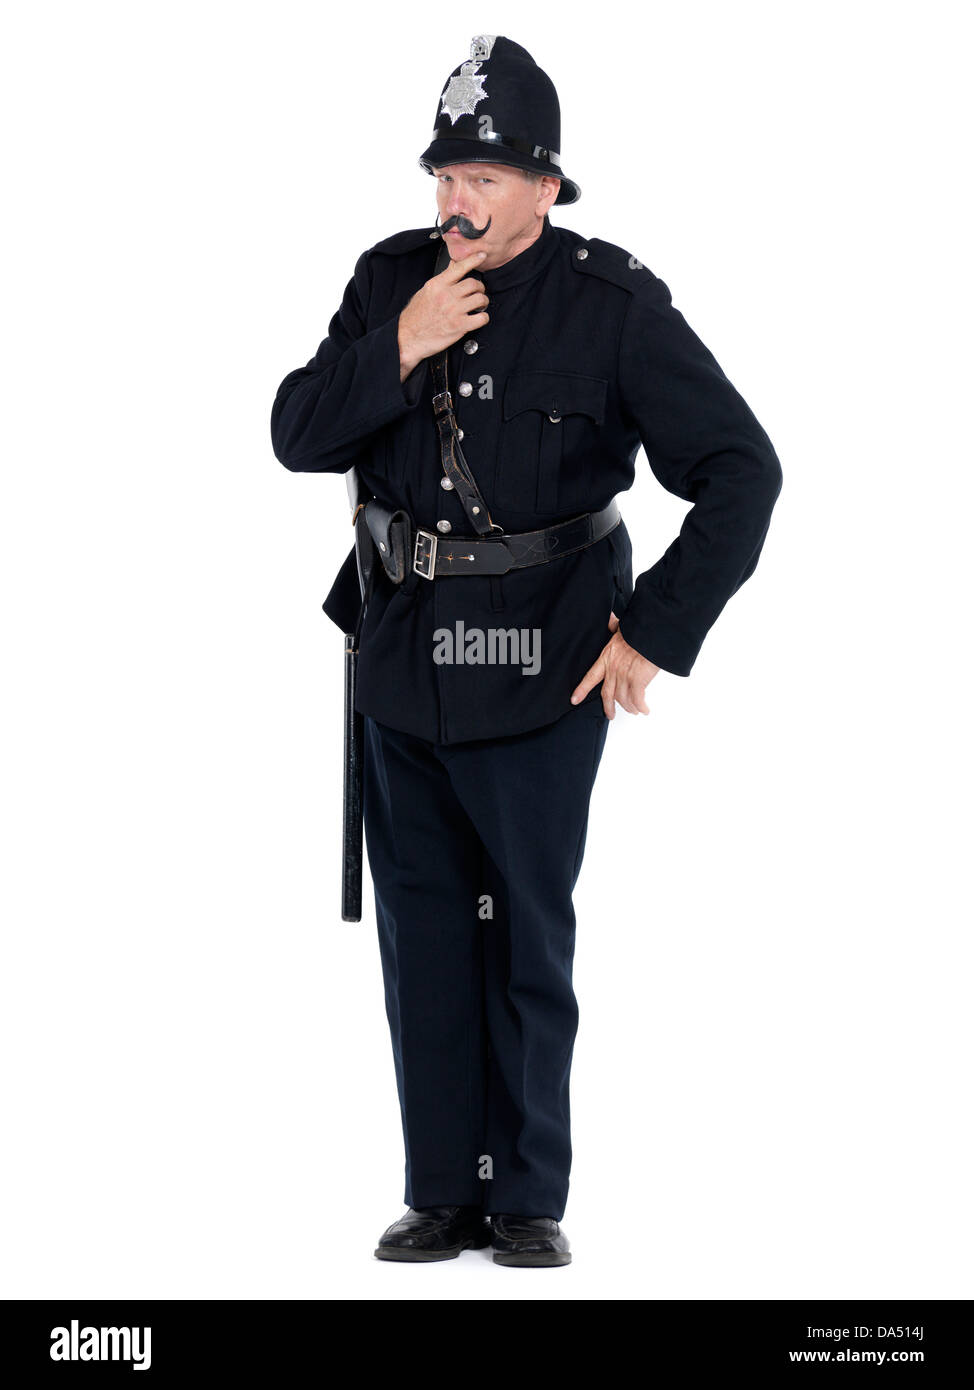 Permis et imprimés à MaximImages.com - Portrait humoristique d'un Keystone COP, officier de police vintage exprimant son autorité, isolé sur fond blanc Banque D'Images